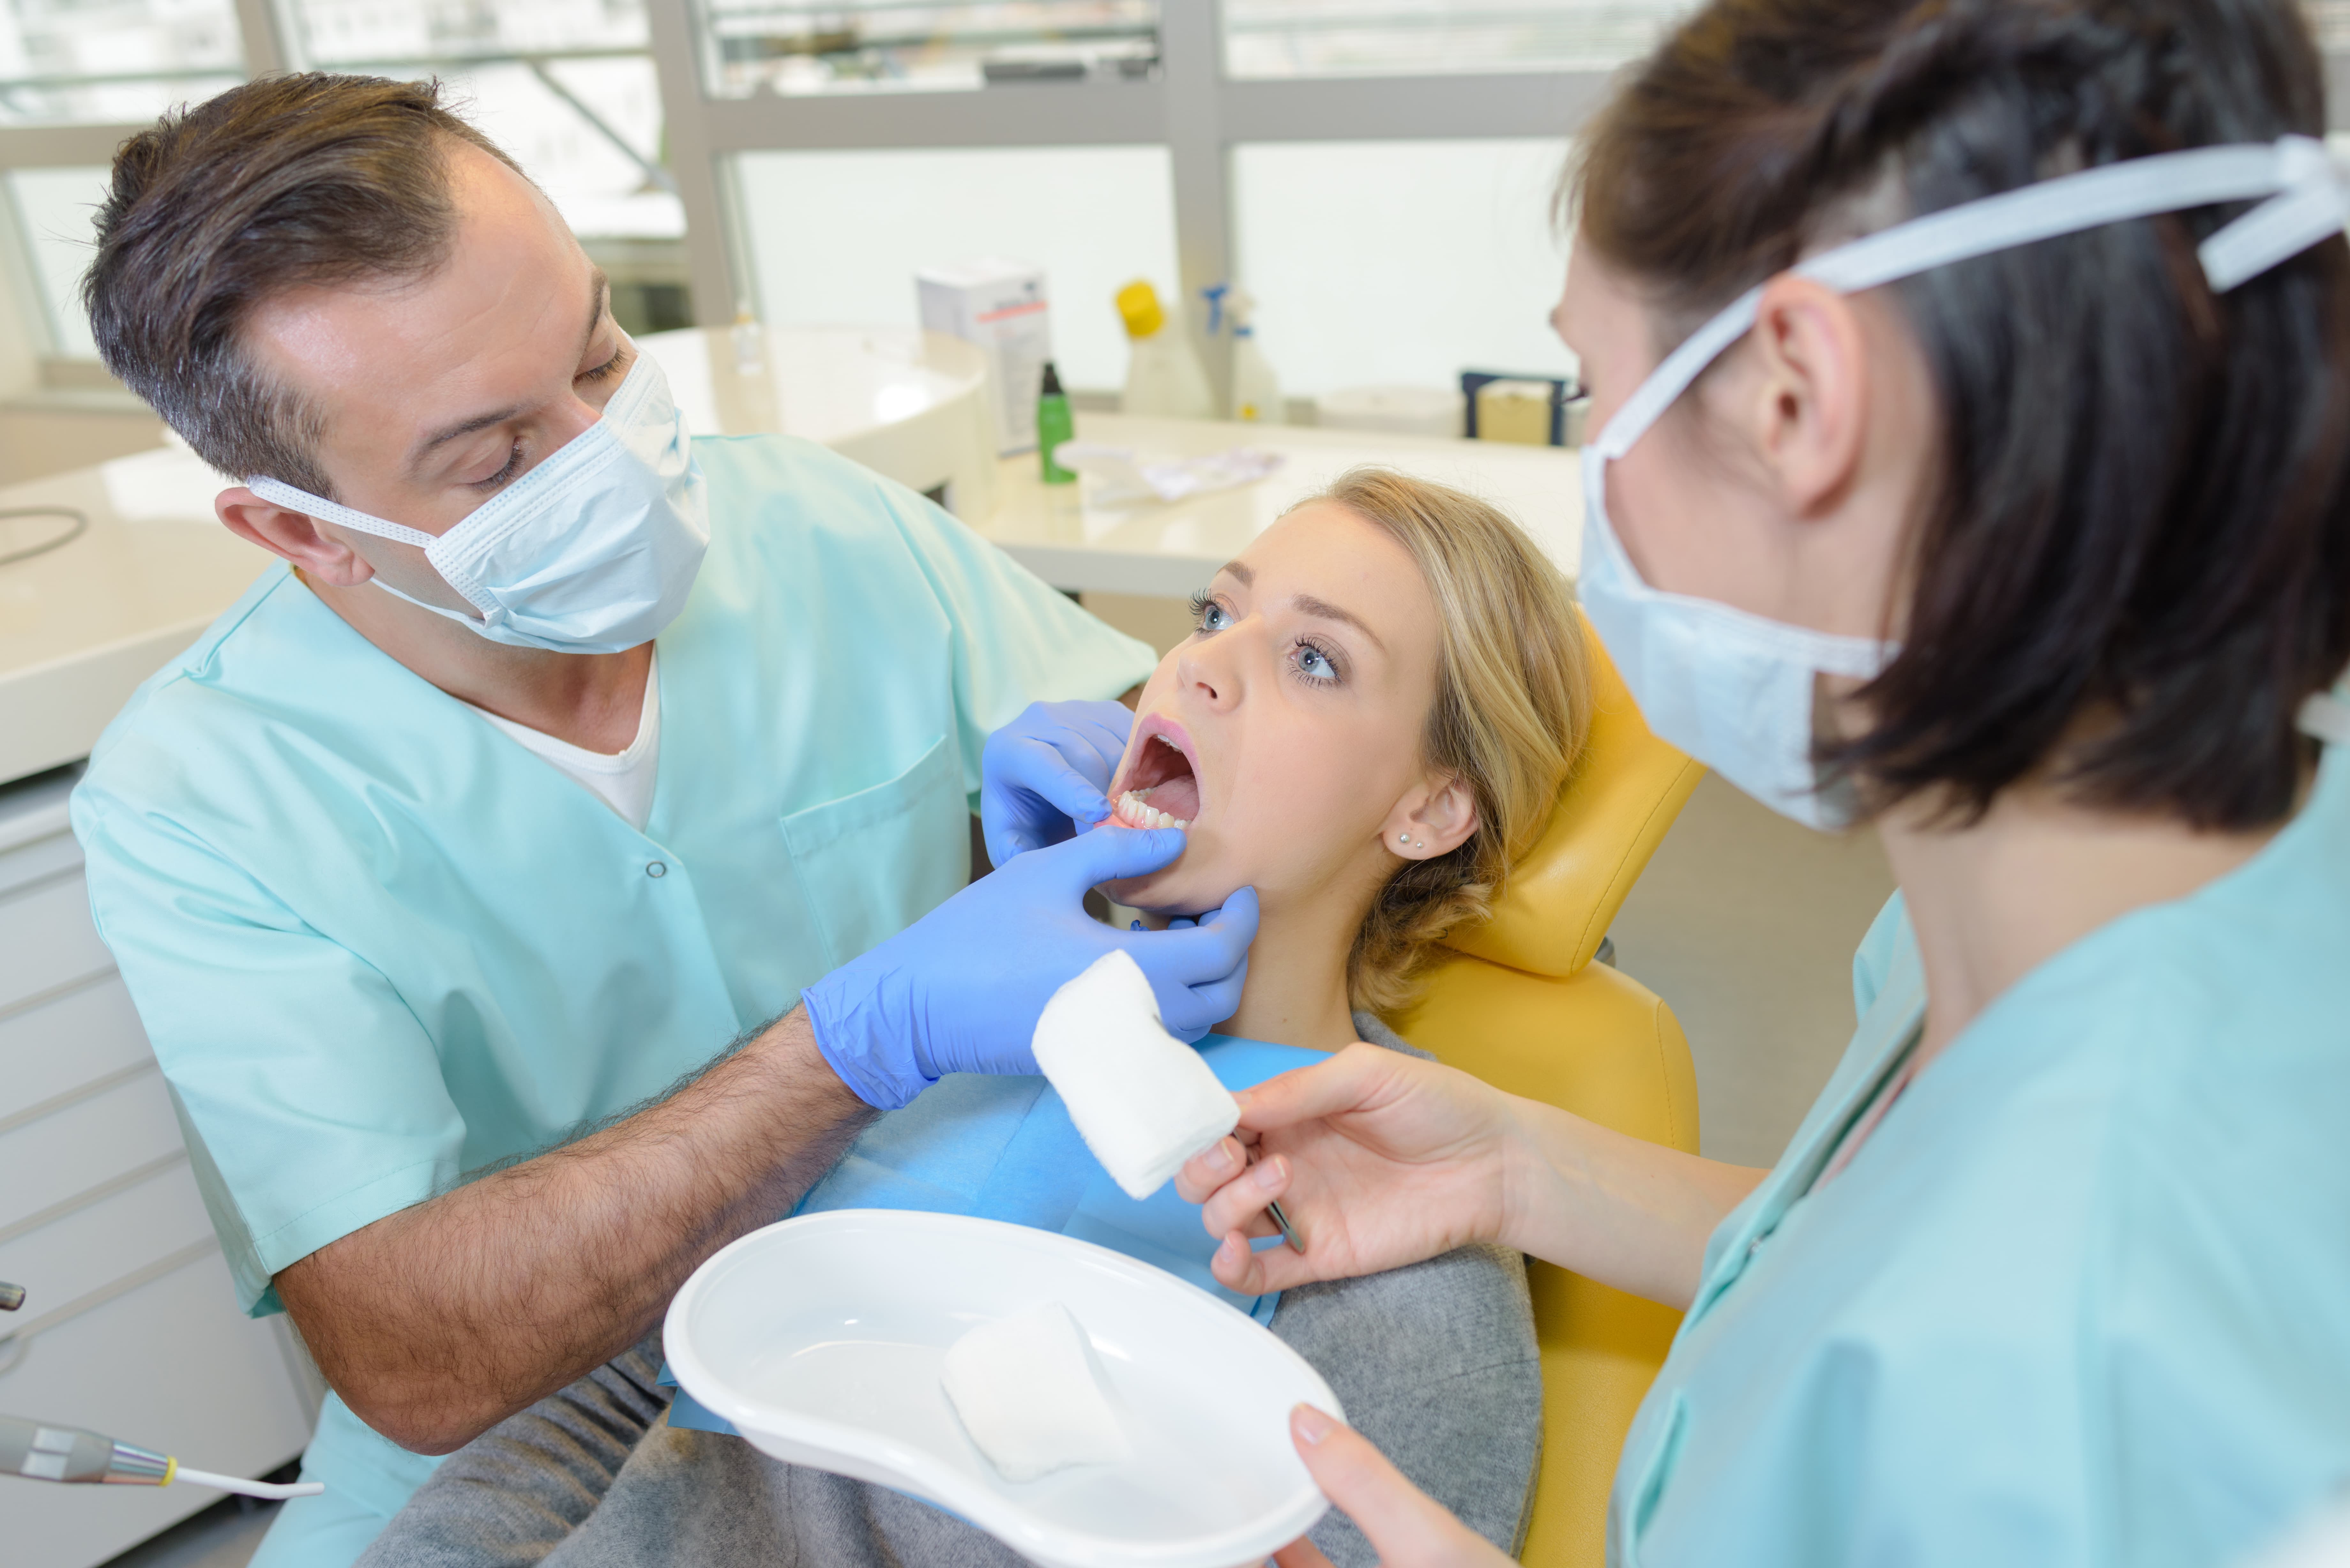 Nederlandse tandartsen lopen voorop met veilig behandelen